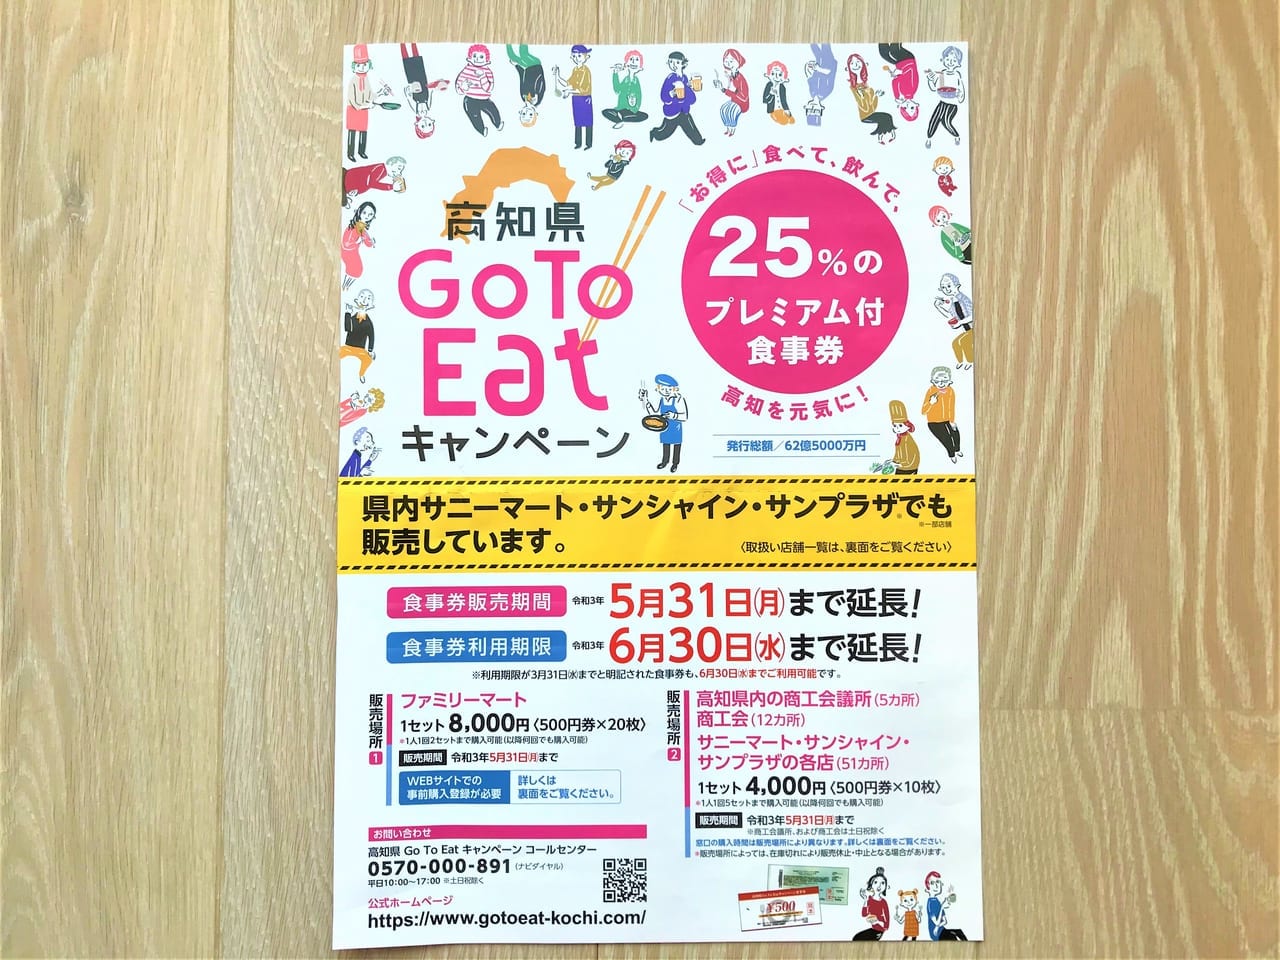 2021年5月26日、高知県Go To Eat食事券の利用自粛期間が開始